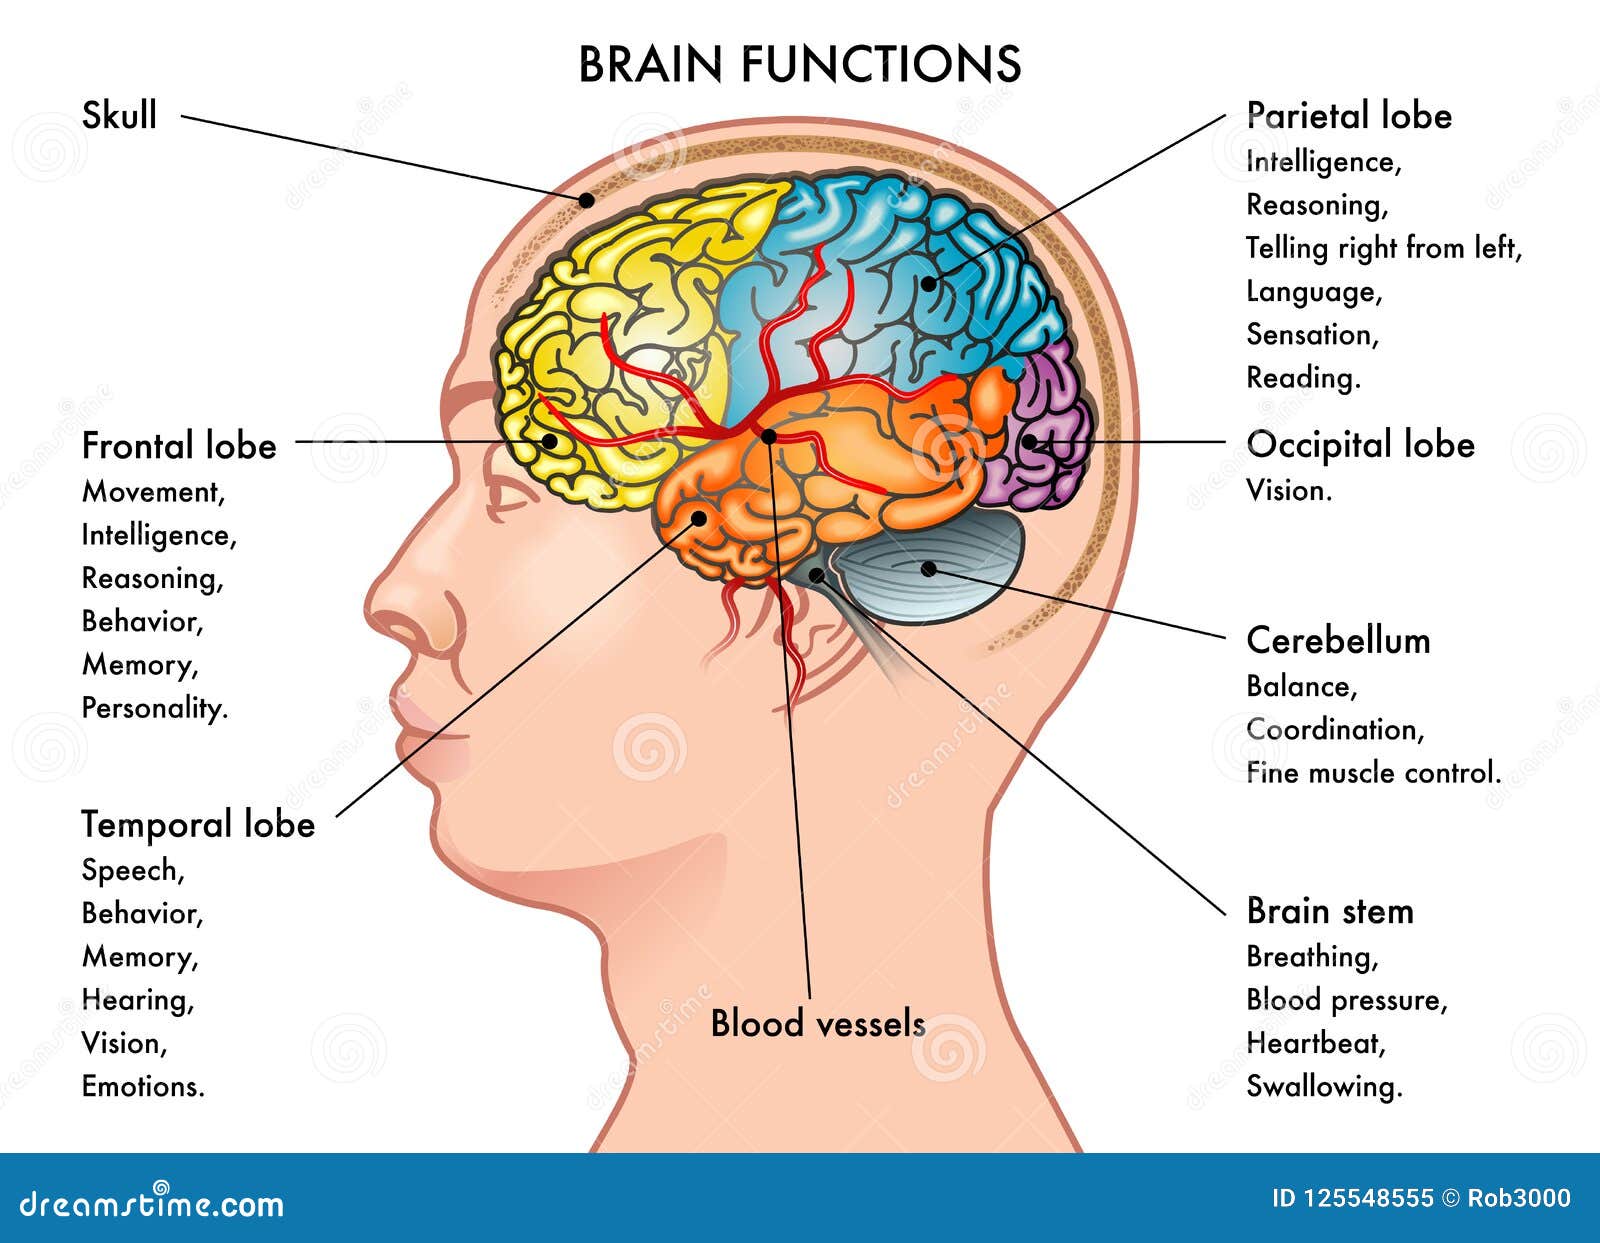 Como funciona el cerebro con cetosis